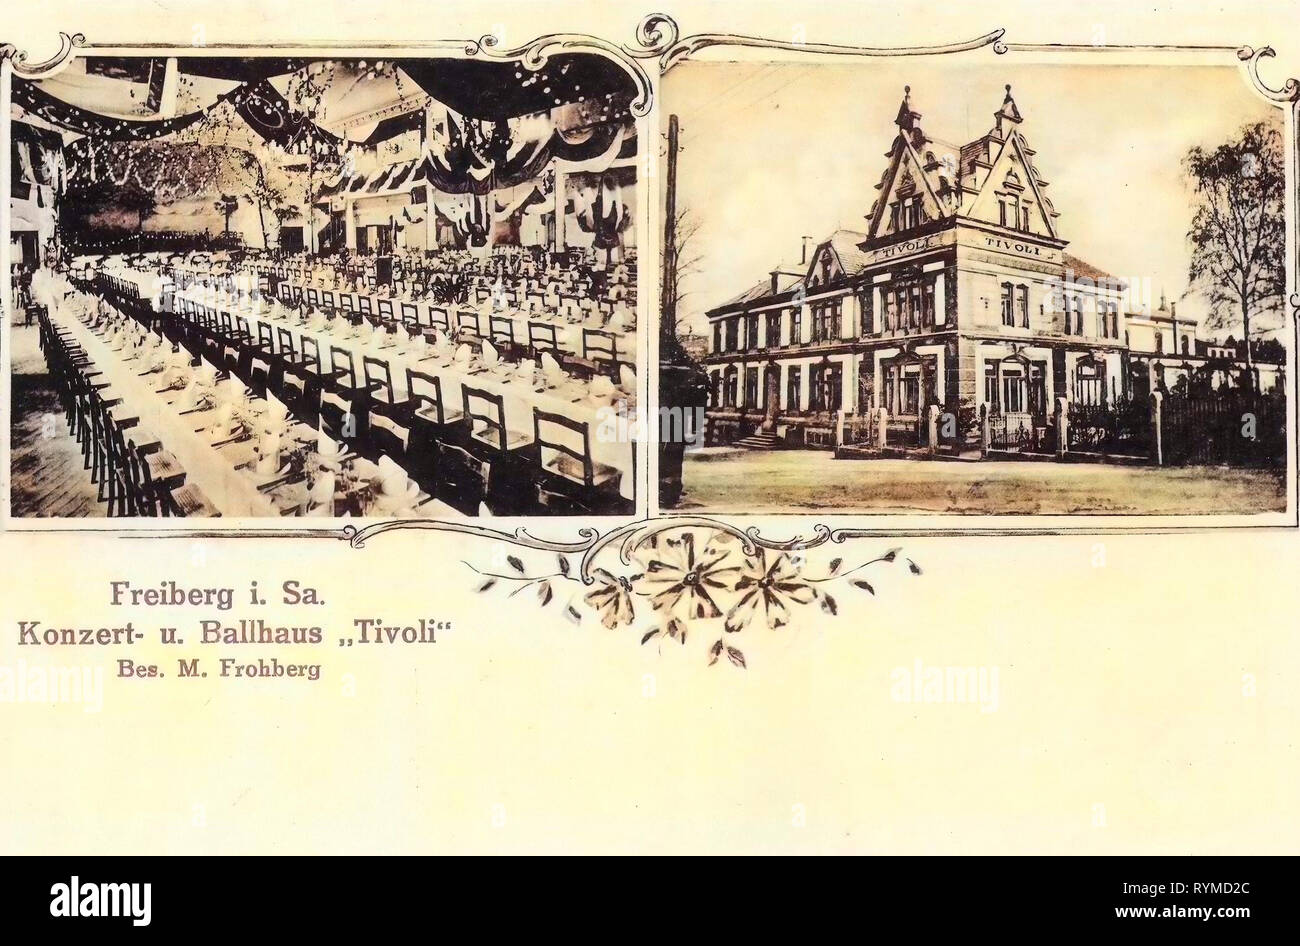 Comedores en Alemania 1906, Landkreis Mittelsachsen, Freiberg, concierto, und Ballhaus Tivoli innen und Außenansicht Foto de stock